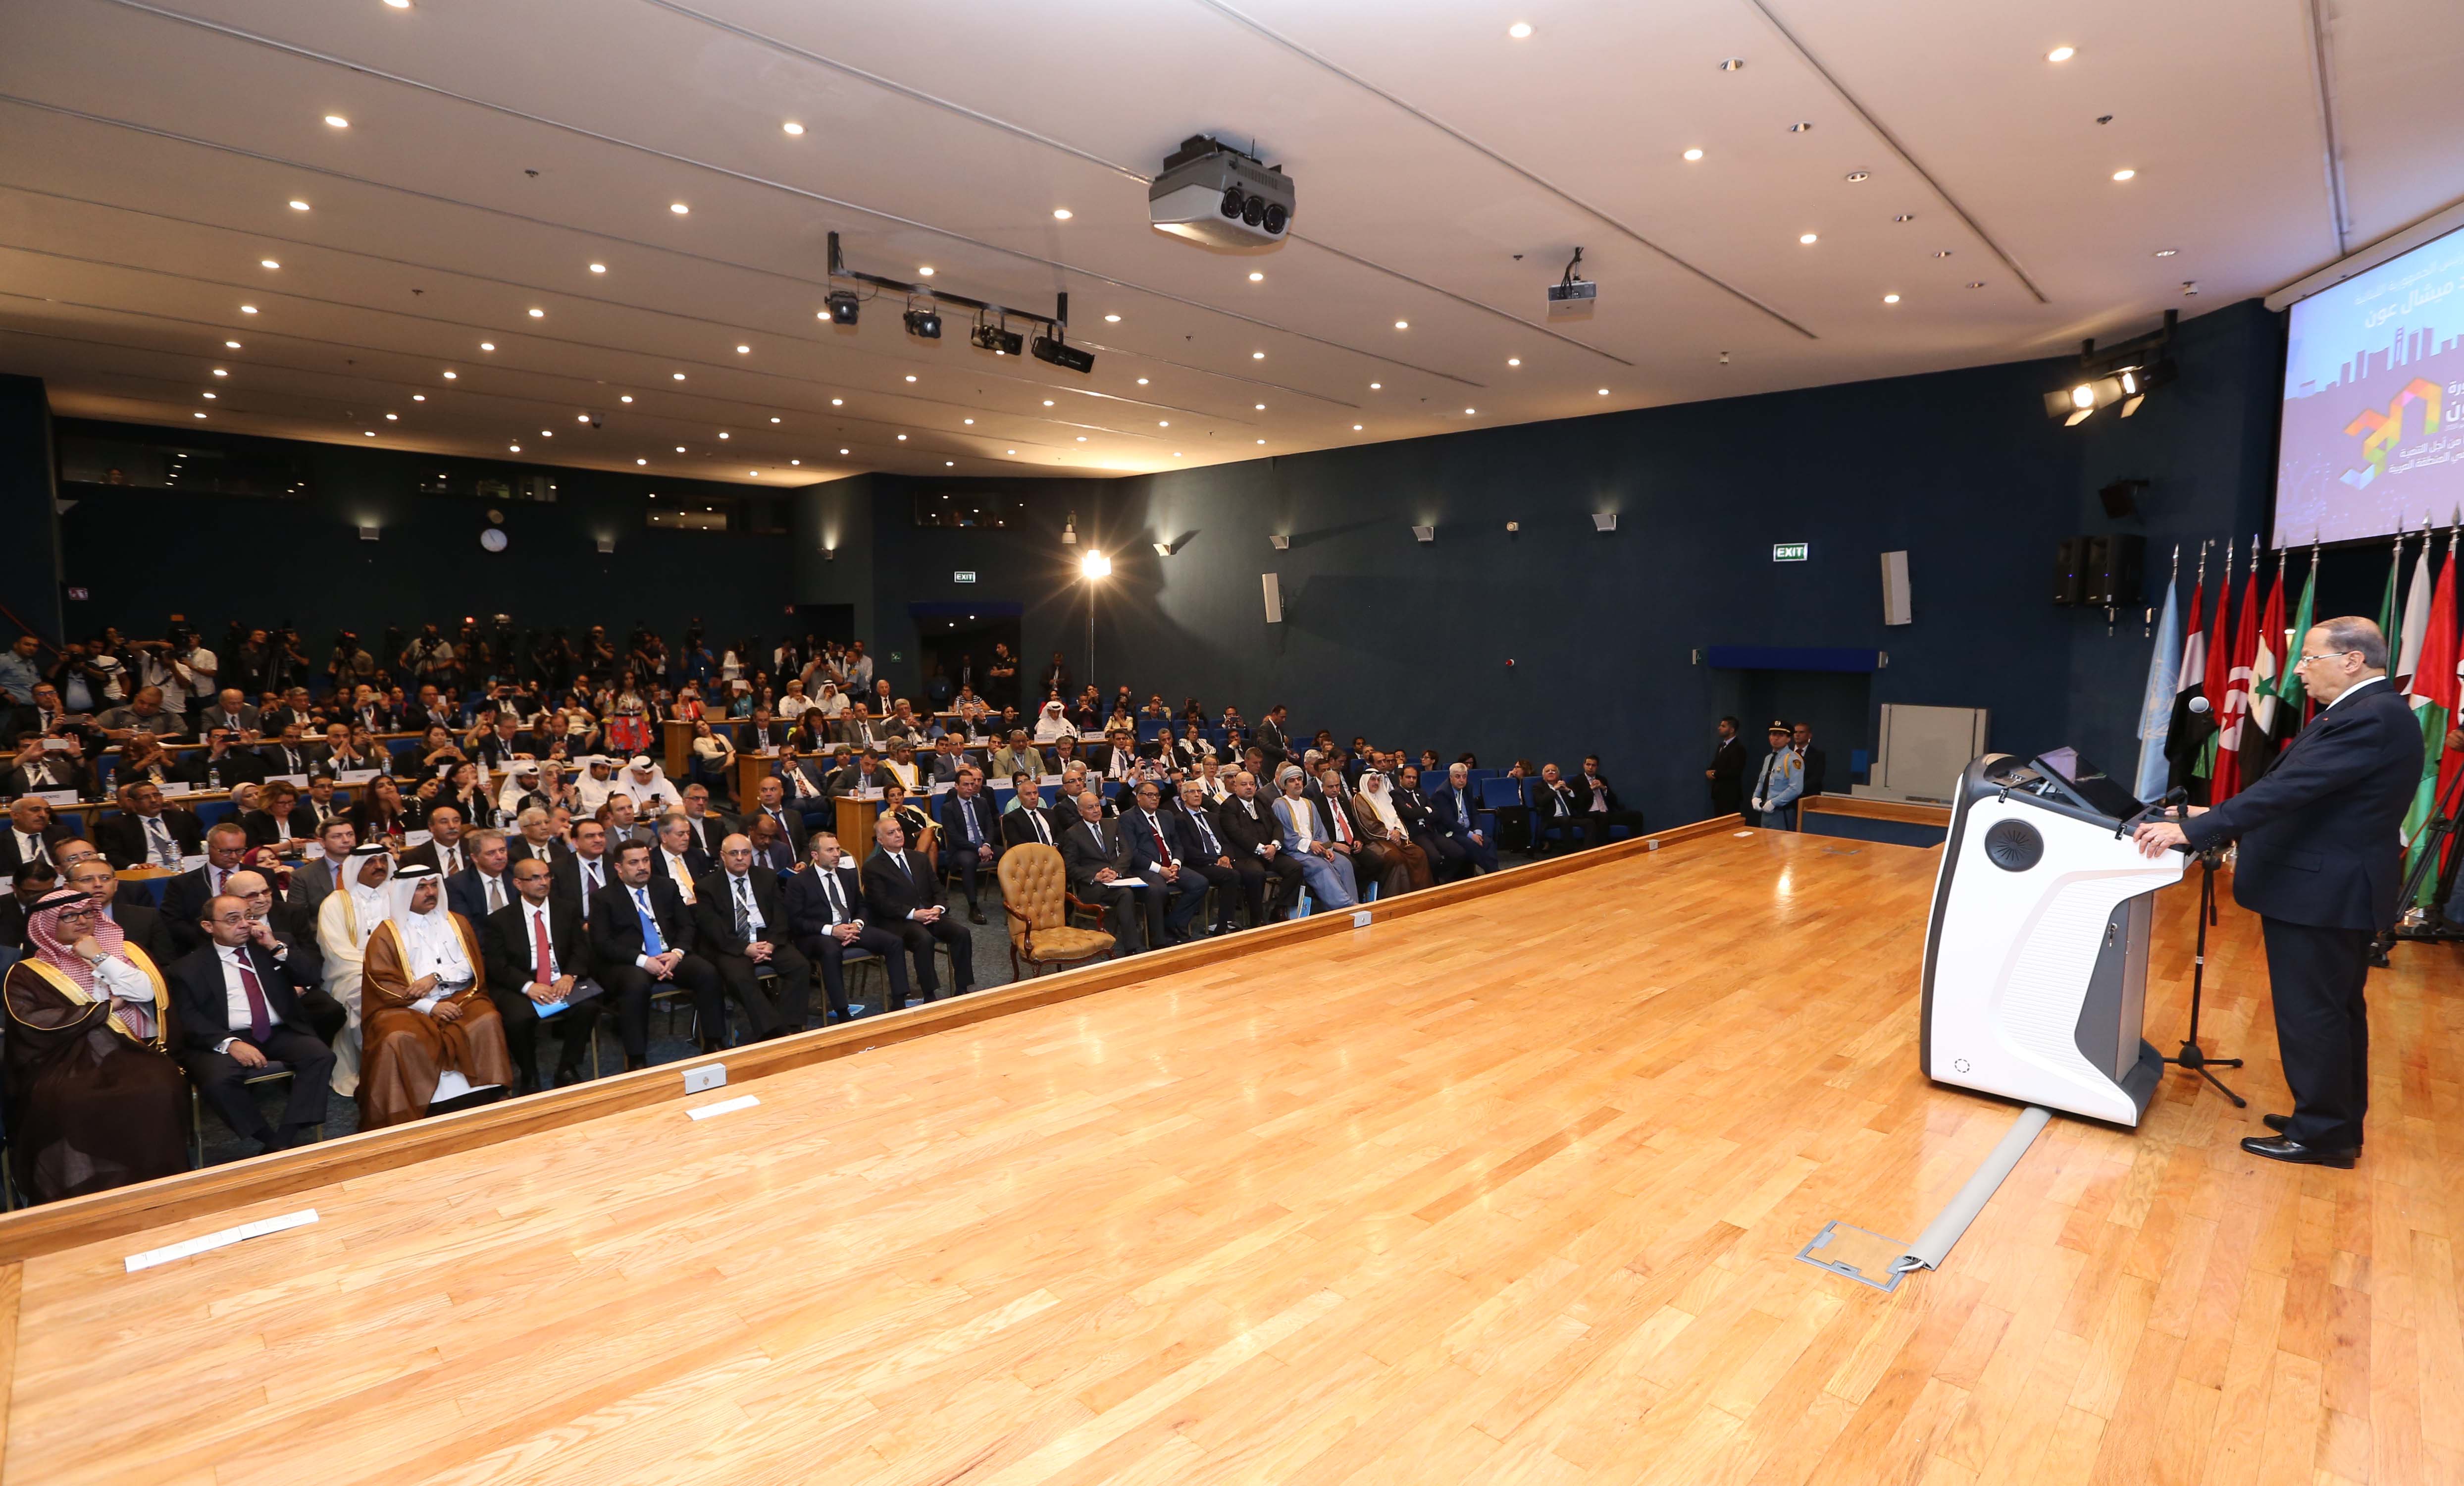 الرئيس اللبناني ميشال عون يلقي كلمة الافتتاح في الدورة الوزارية ال30 للجنة الاقتصادية والاجتماعية لغربي اسيا (اسكوا) في بيروت